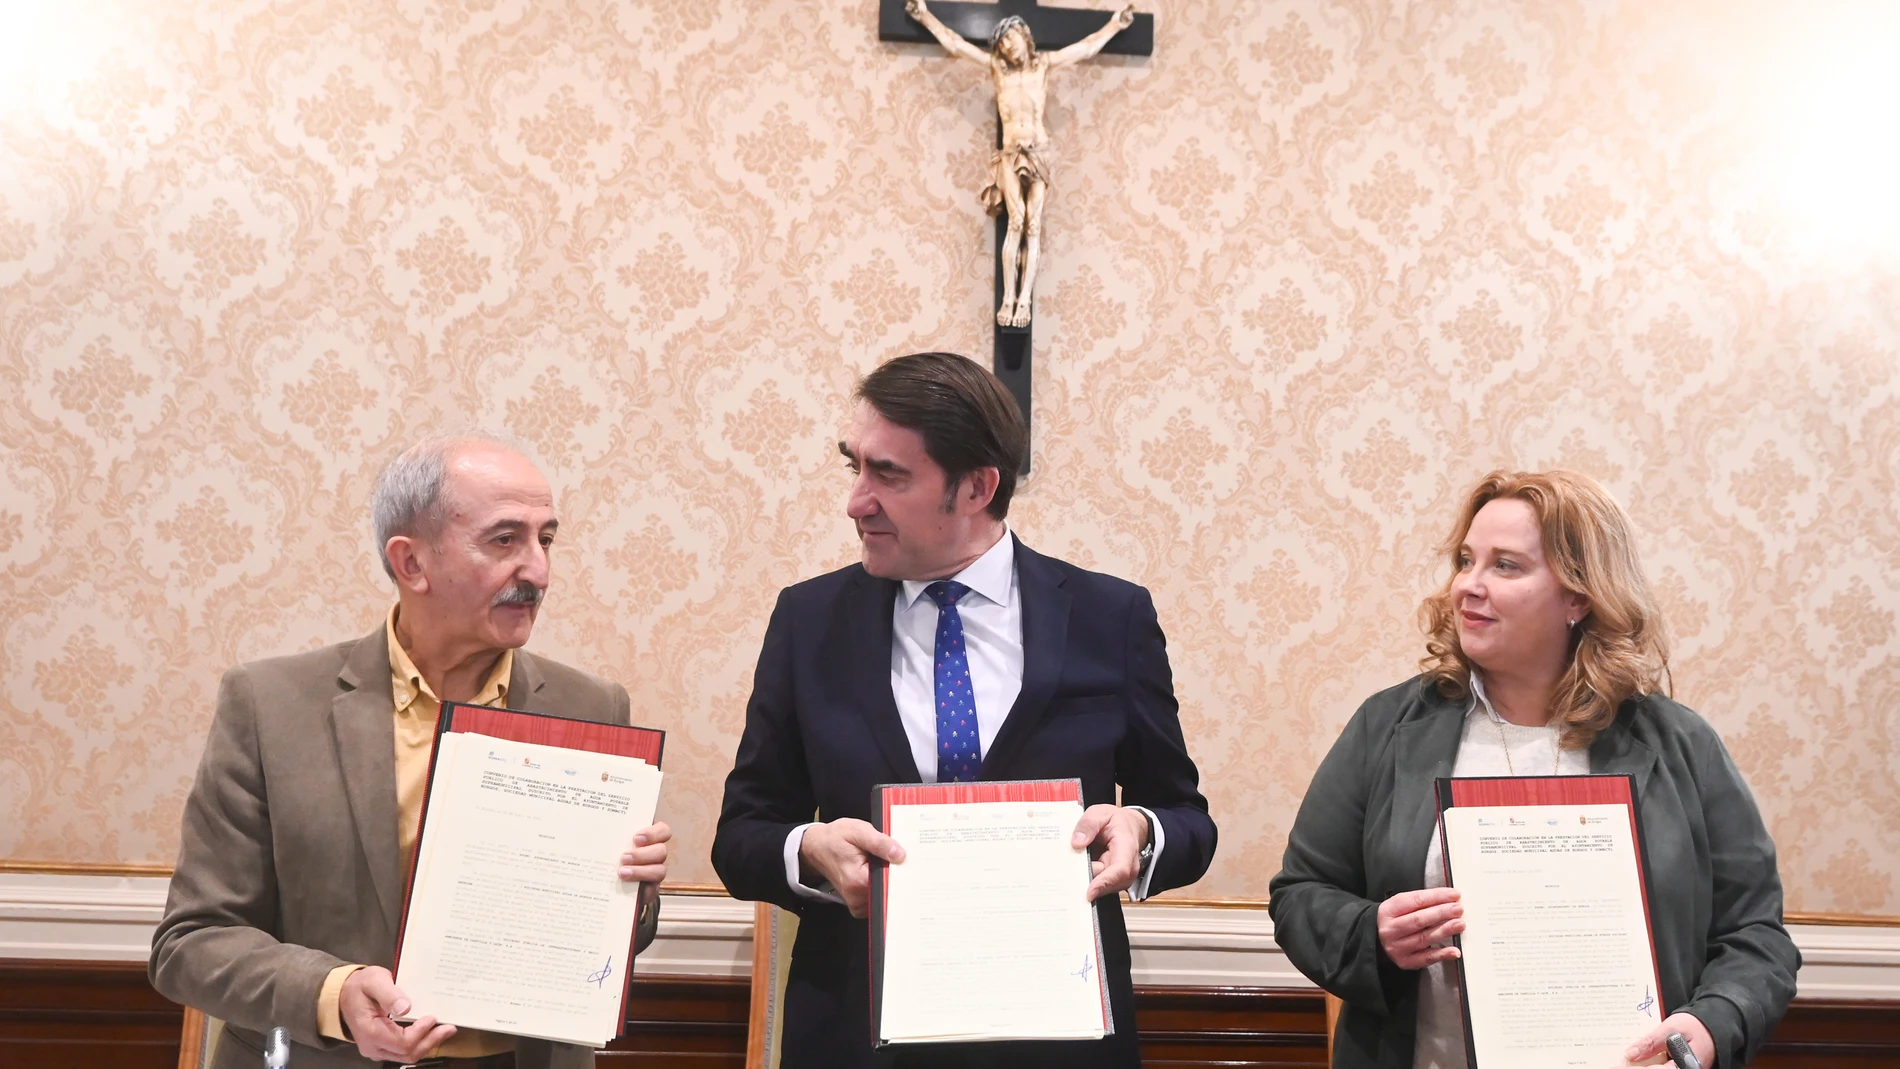 El consejero Juan Carlos Suárez-Quiñones suscribe el acuerdo con la alcaldesa de Burgos, Cristina Ayala; y el vicepresidente de la Diputación, Ramiro Ibáñez